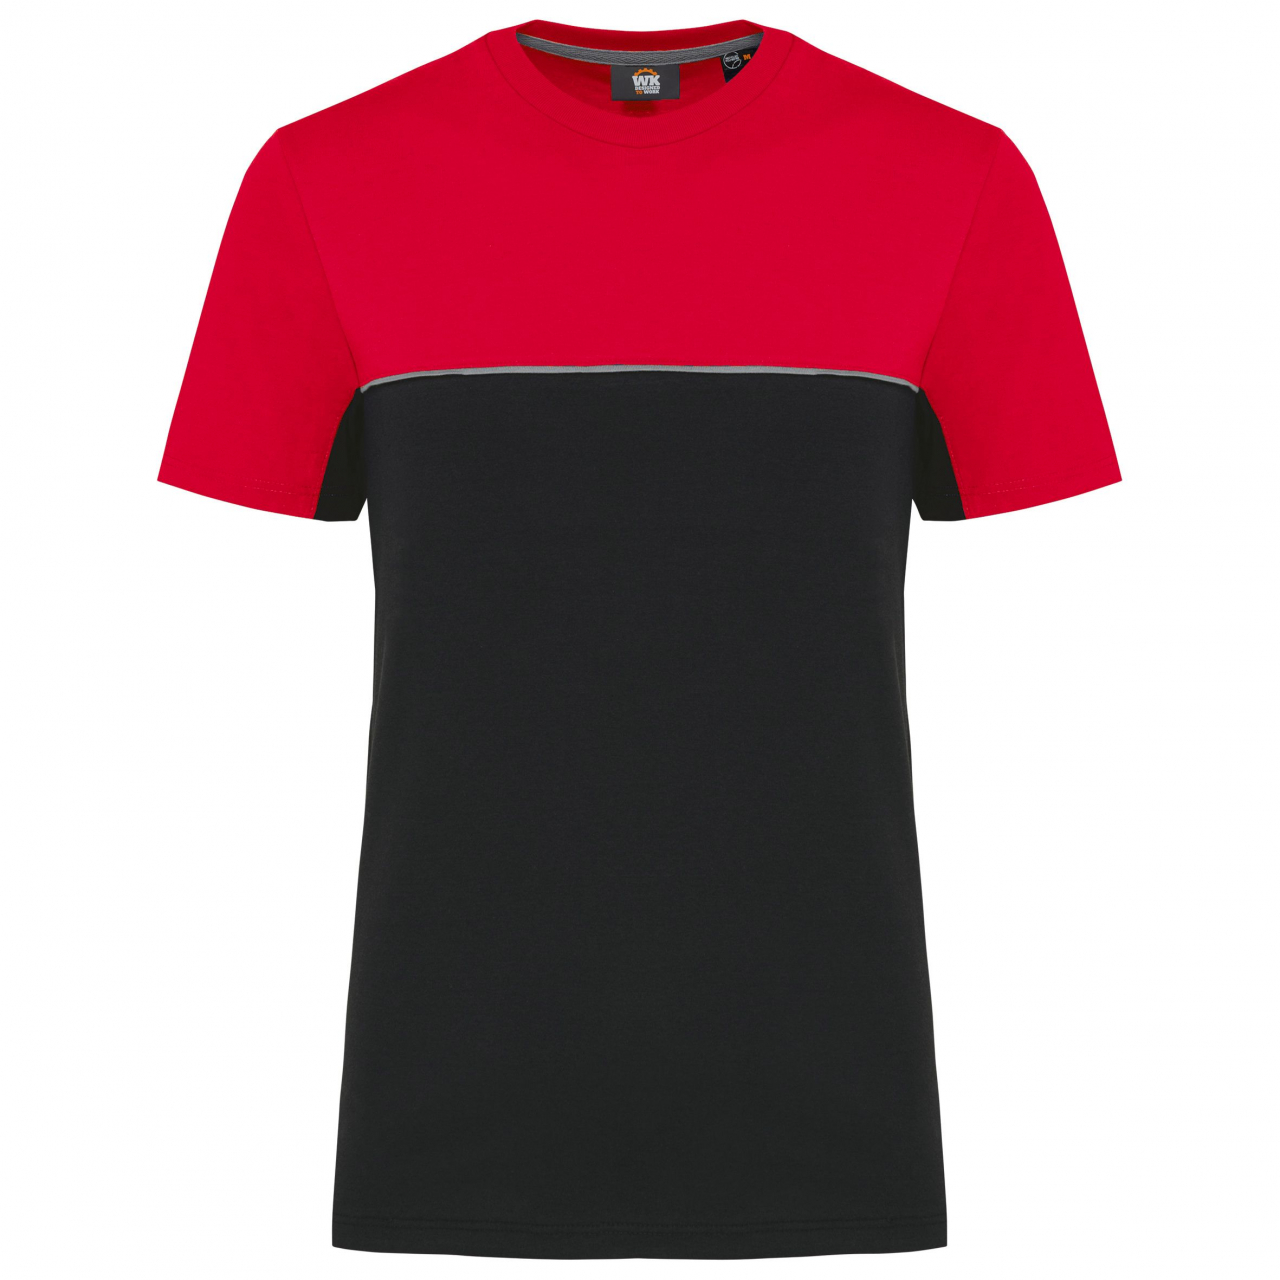 Pracovní triko dvoubarevné WK - černé-červené, XXL